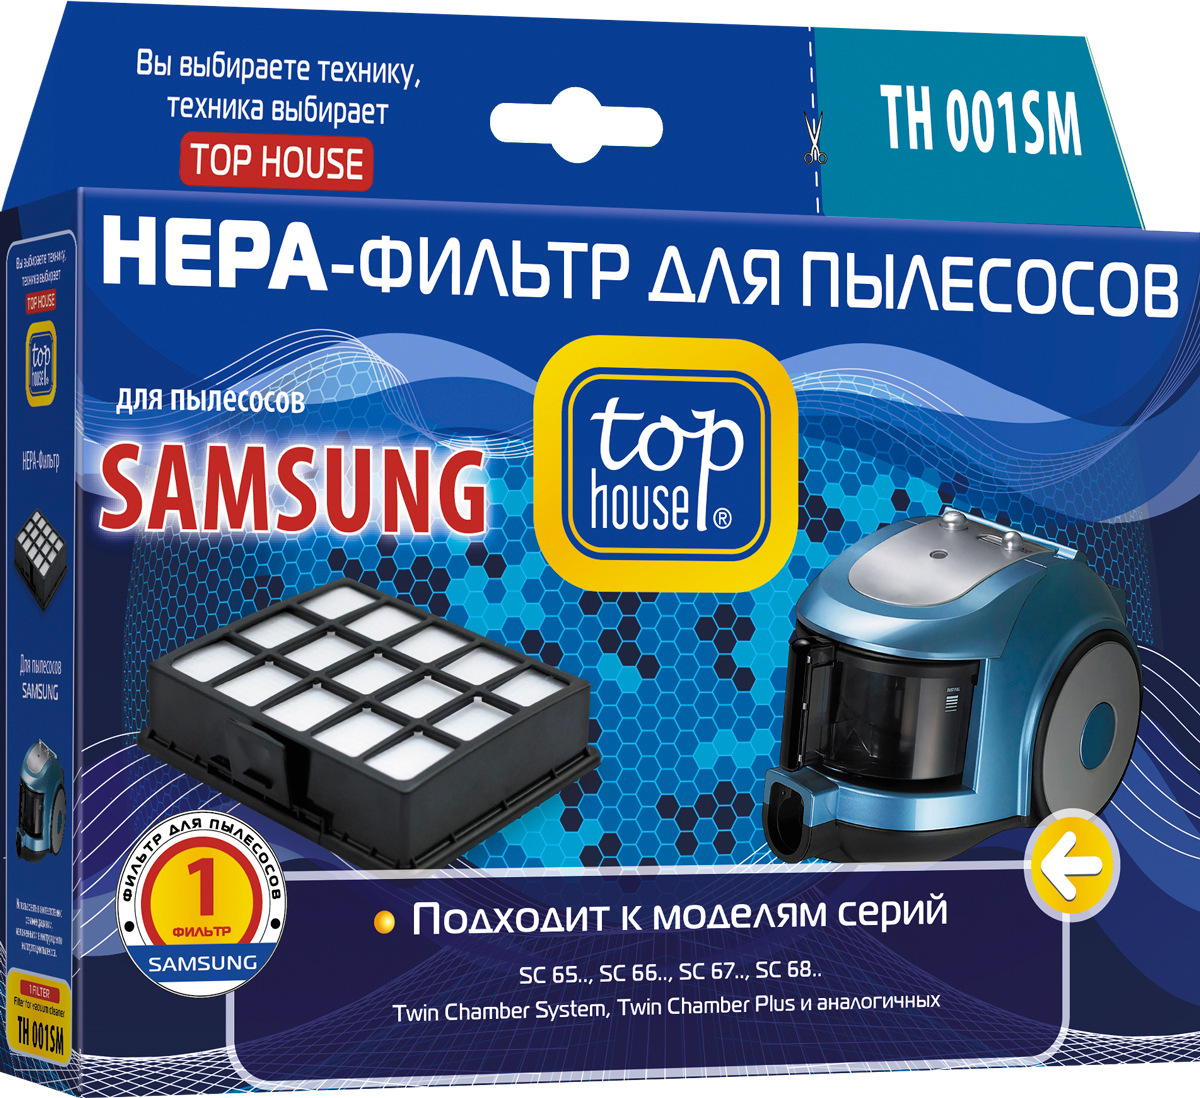 Top House TH 001SM HEPA-фильтр для пылесосов Samsung